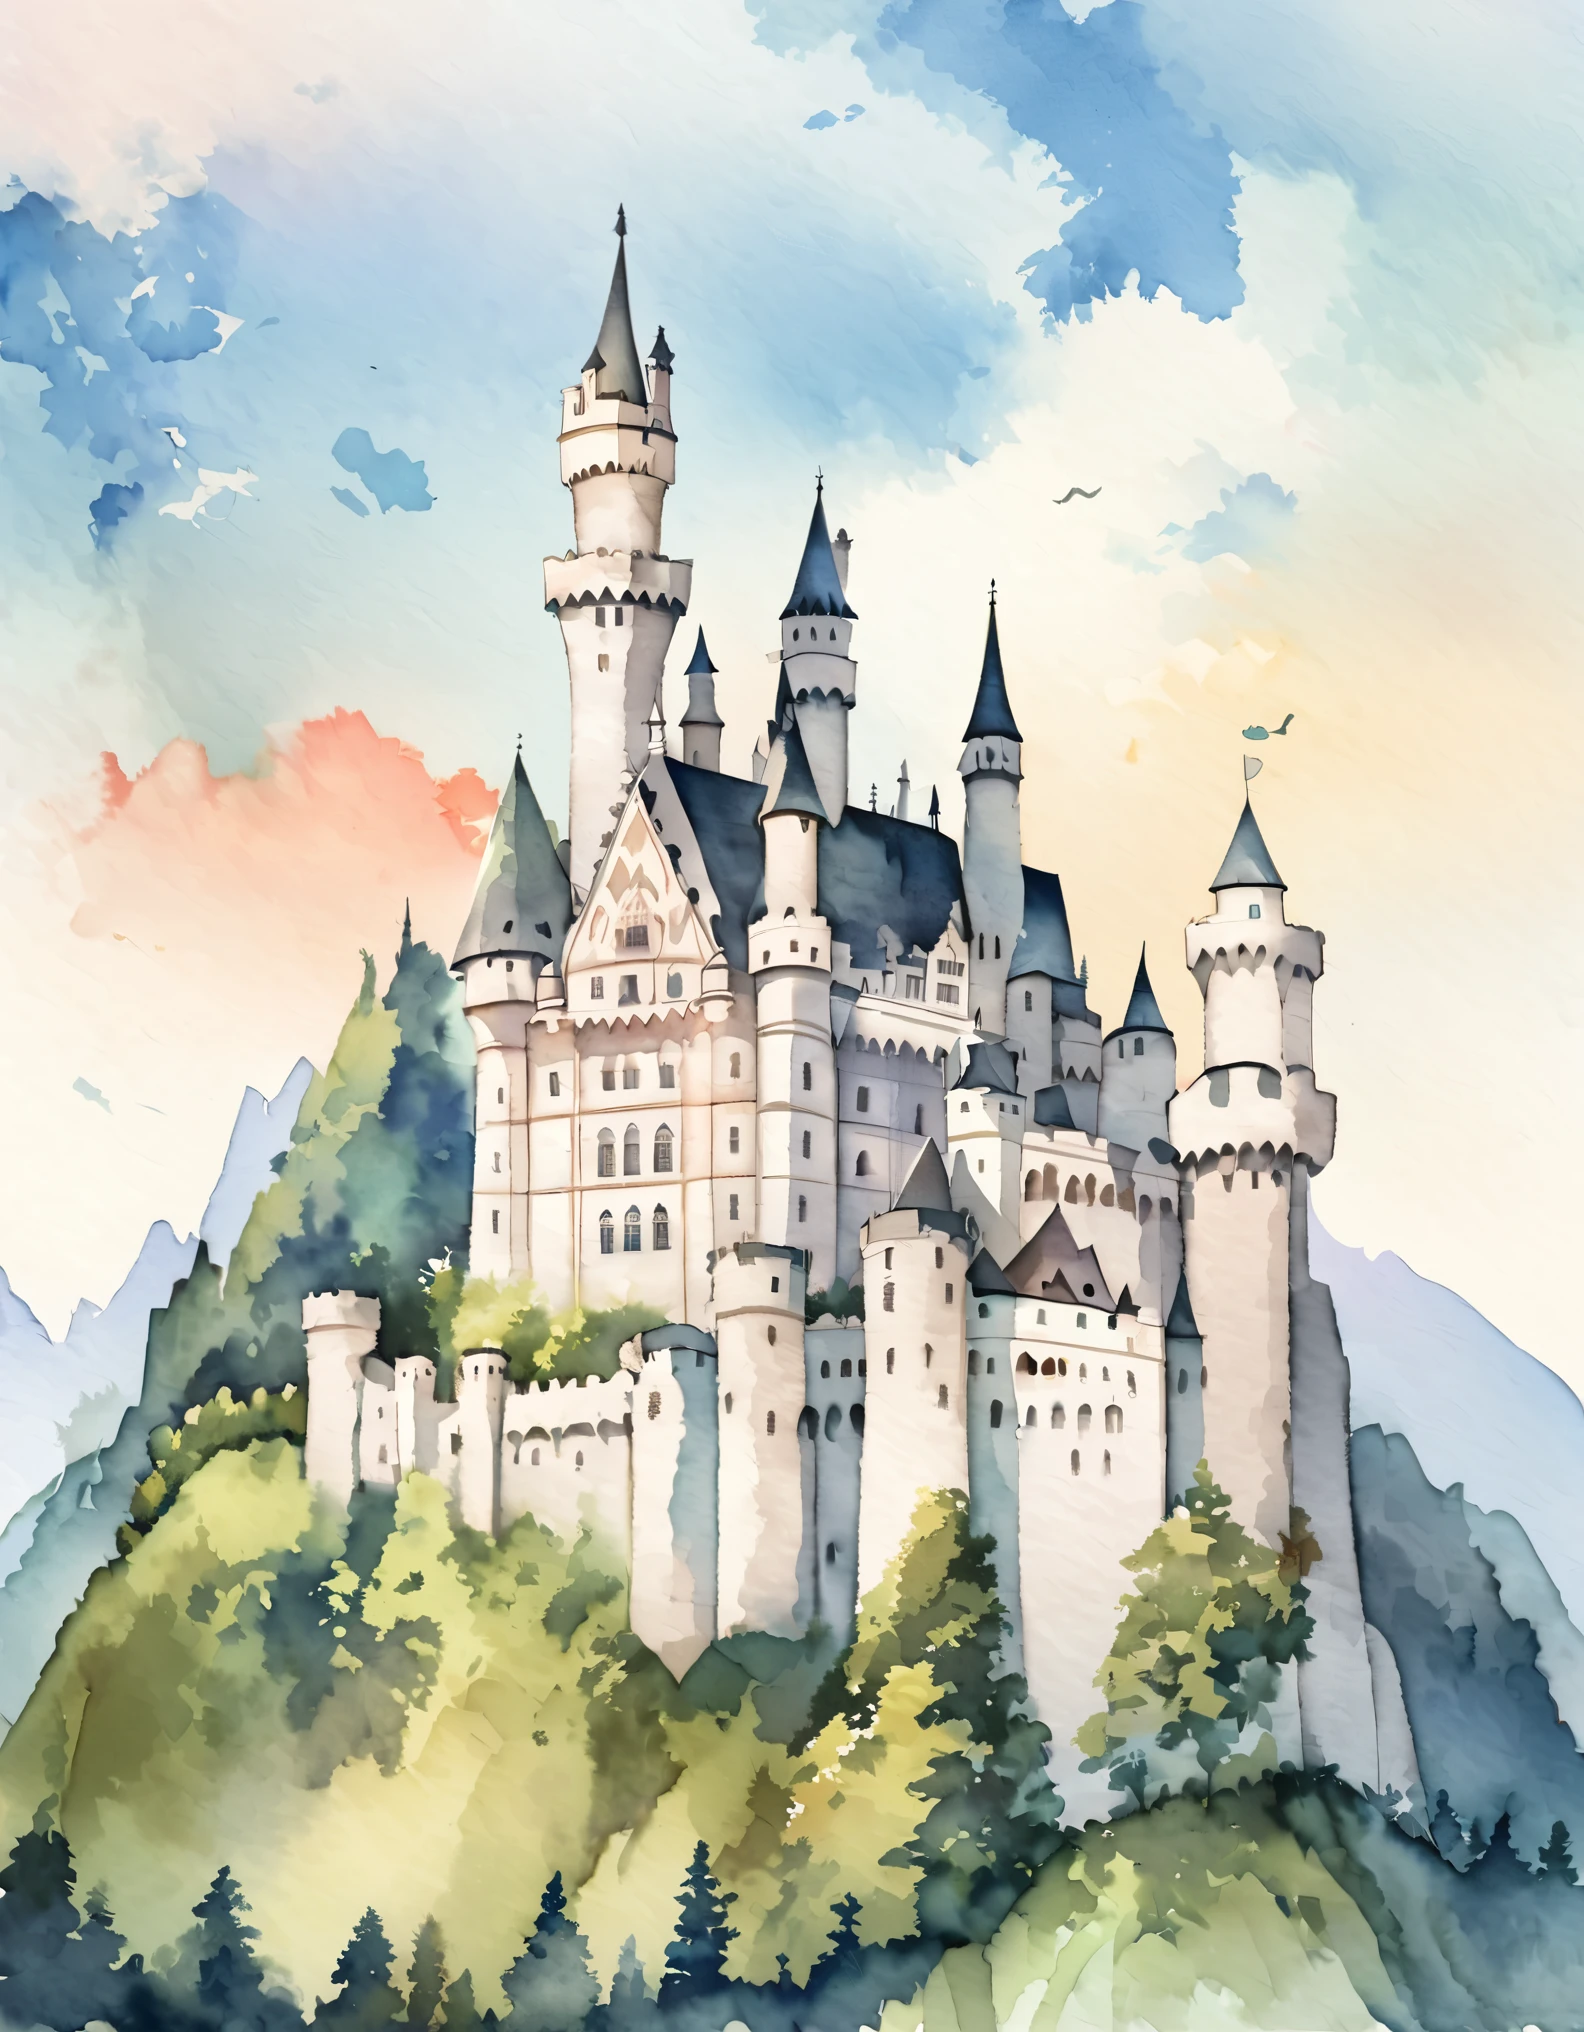 Castelo de Neuschwanstein, As paredes exteriores são em tijolo revestido com calcário branco., Um castelo romântico para um rei que persegue um sonho não realizado, lindo castelo, Castelos na Alemanha, Construído em uma colina, aquarela:1.2, caprichoso e delicado, Como uma ilustração em uma criança&#39;livro, escovação suave, Dim, As cores claras criam uma aparência fantástica.